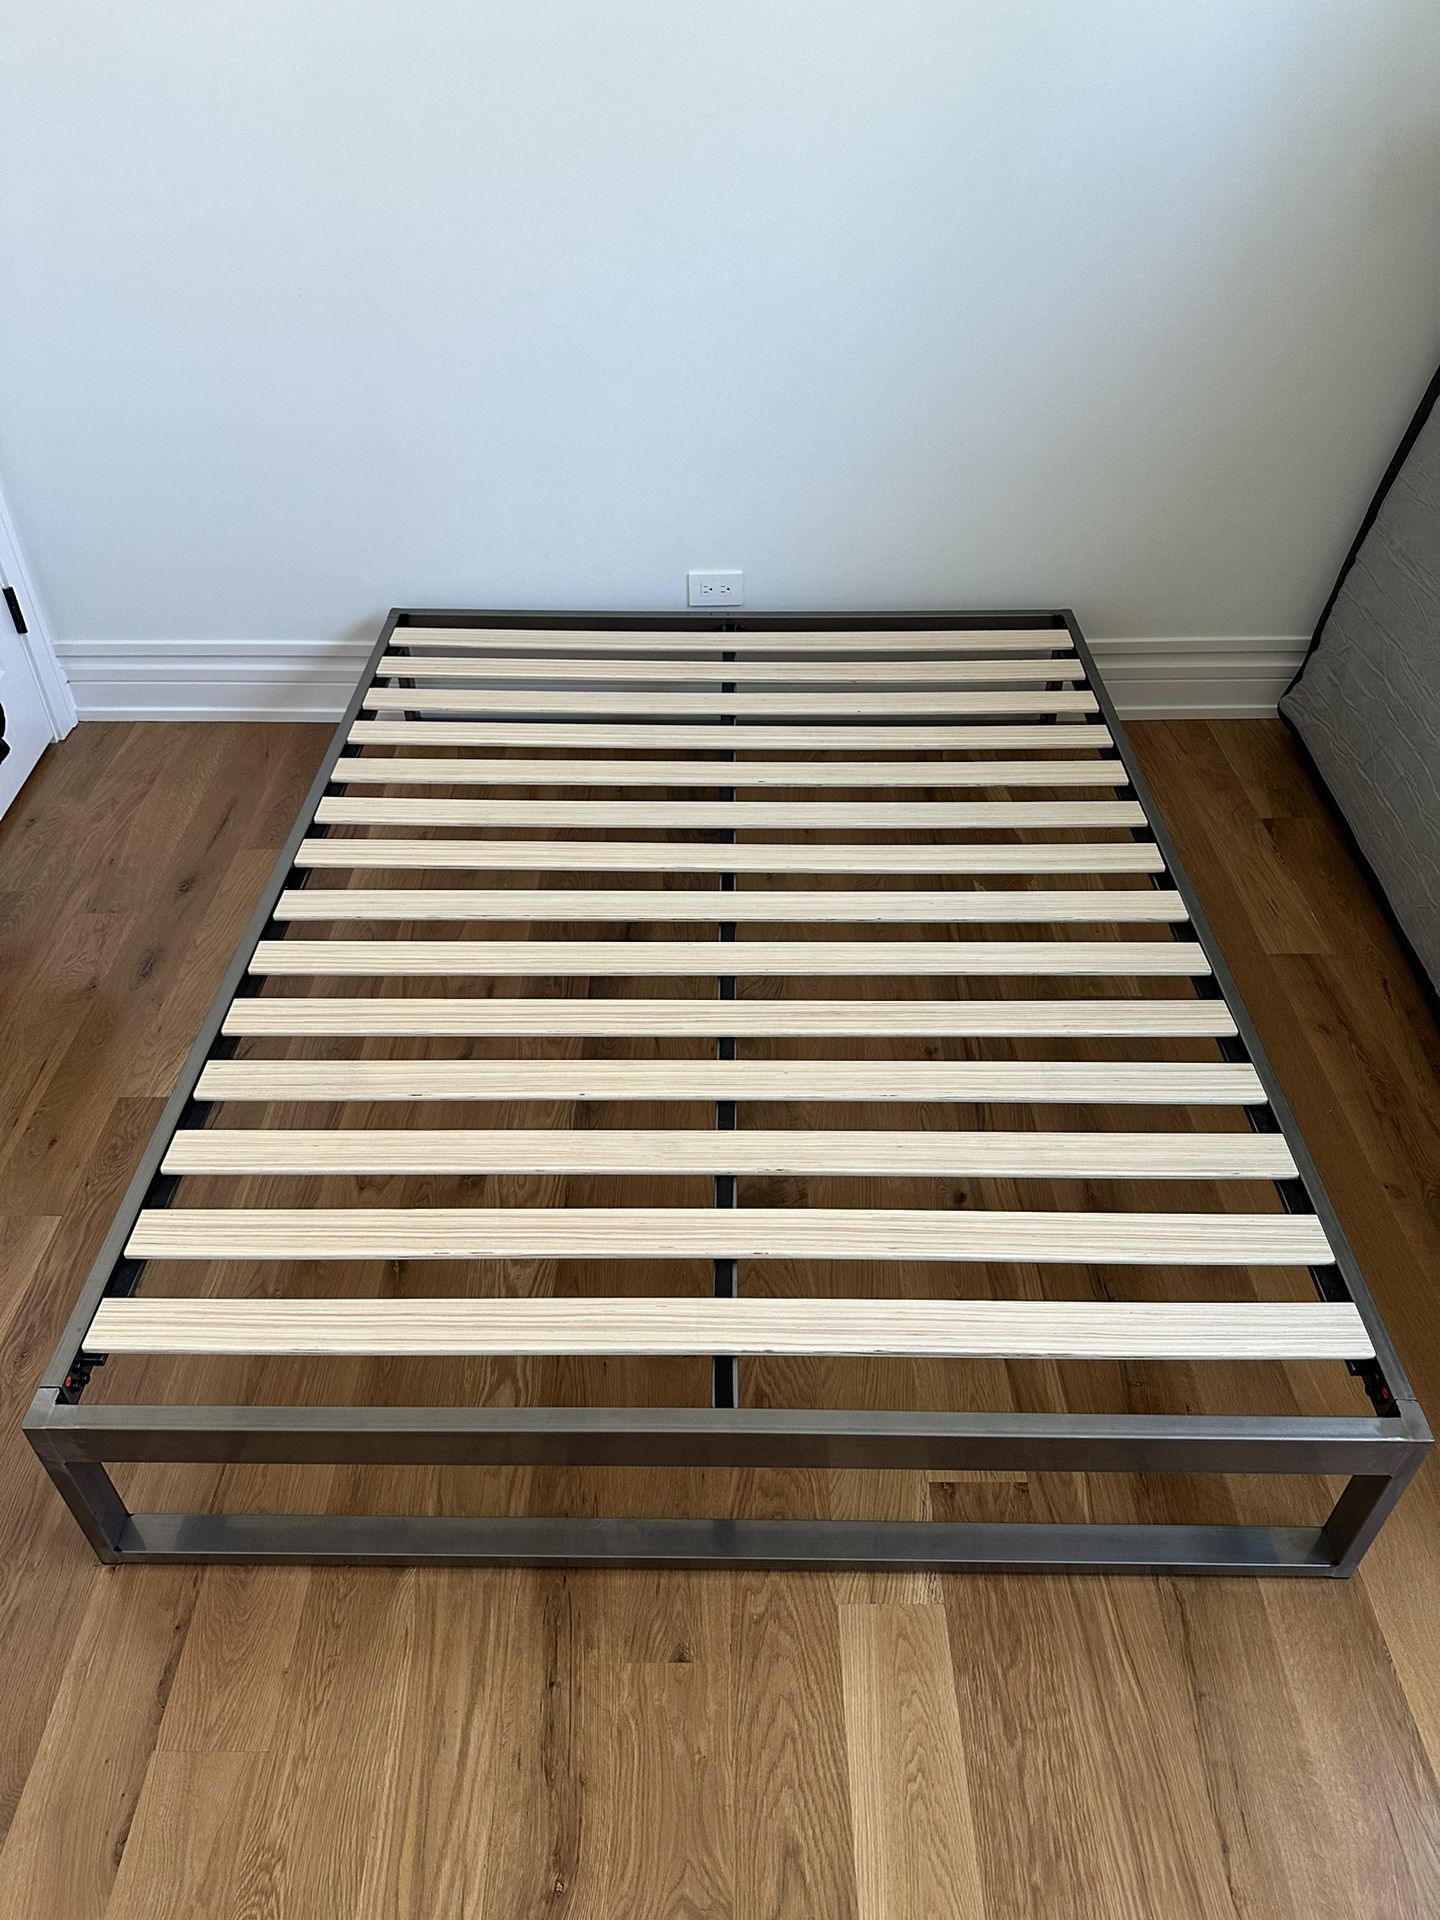 Keetsa Queen Steel Bed Frame (BRAND NEW)